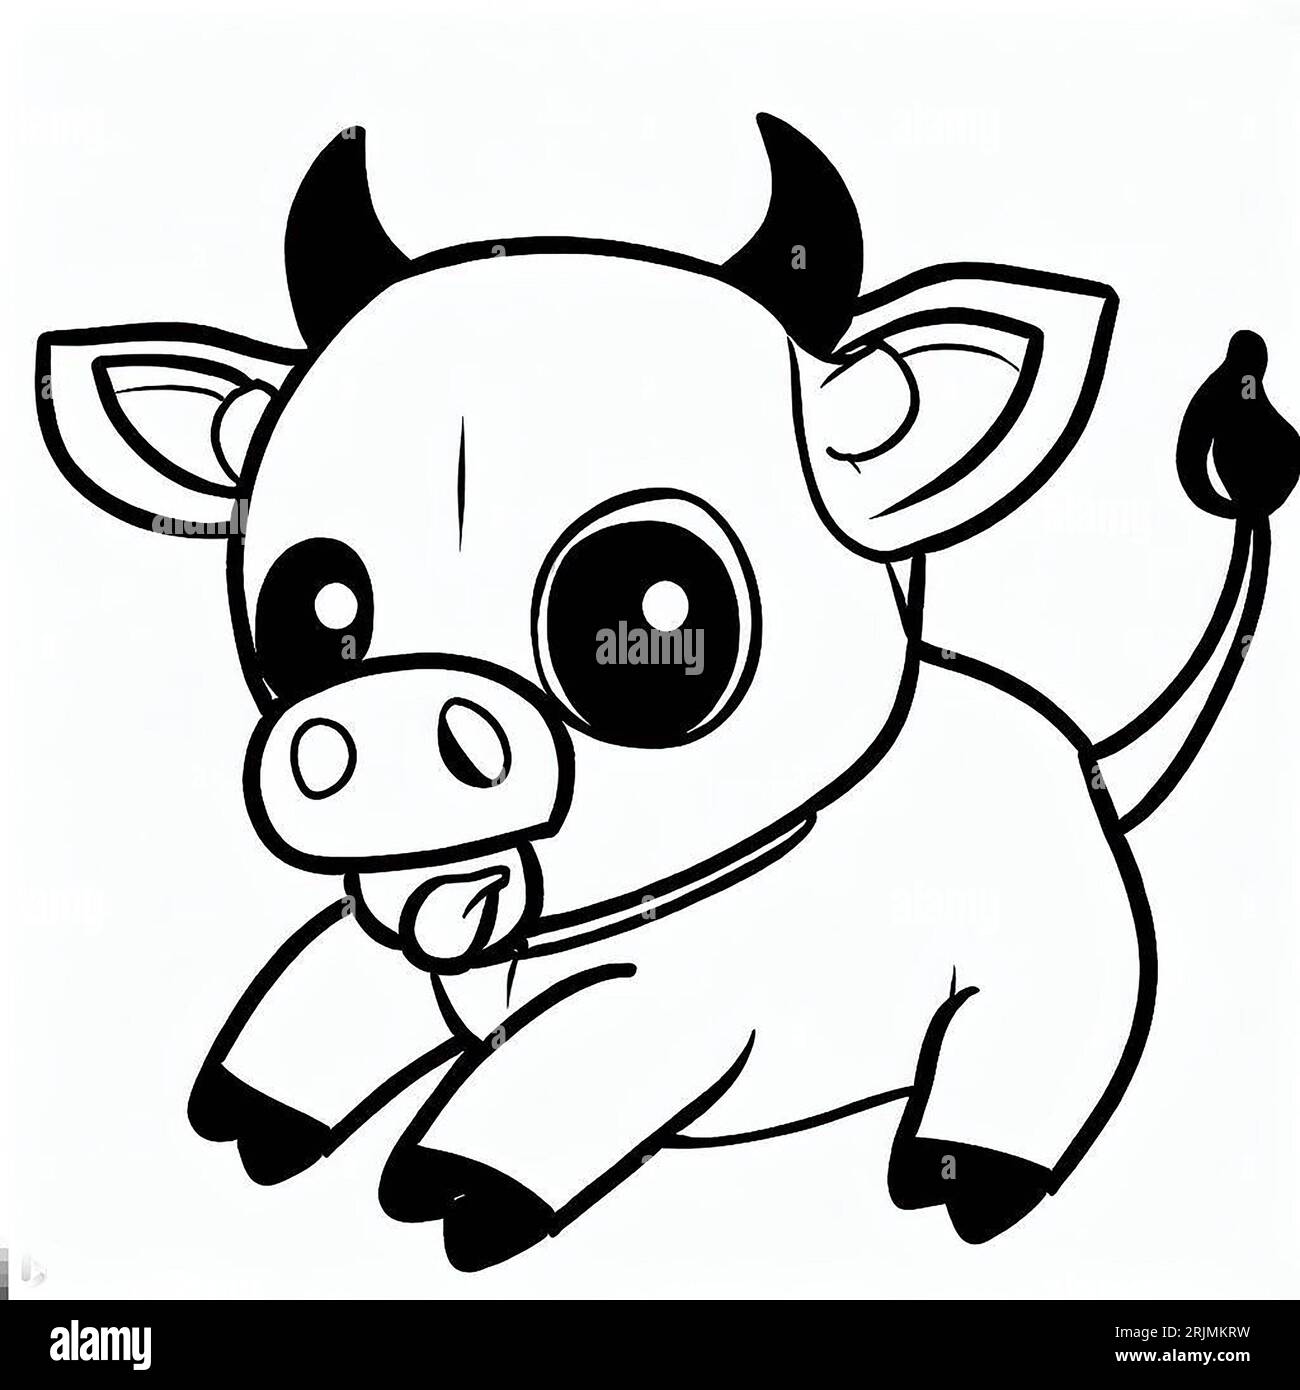 Illustrazione monocromatica di un'adorabile mucca in piedi sulle zampe posteriori con la bocca spalancata, che guarda lateralmente Foto Stock